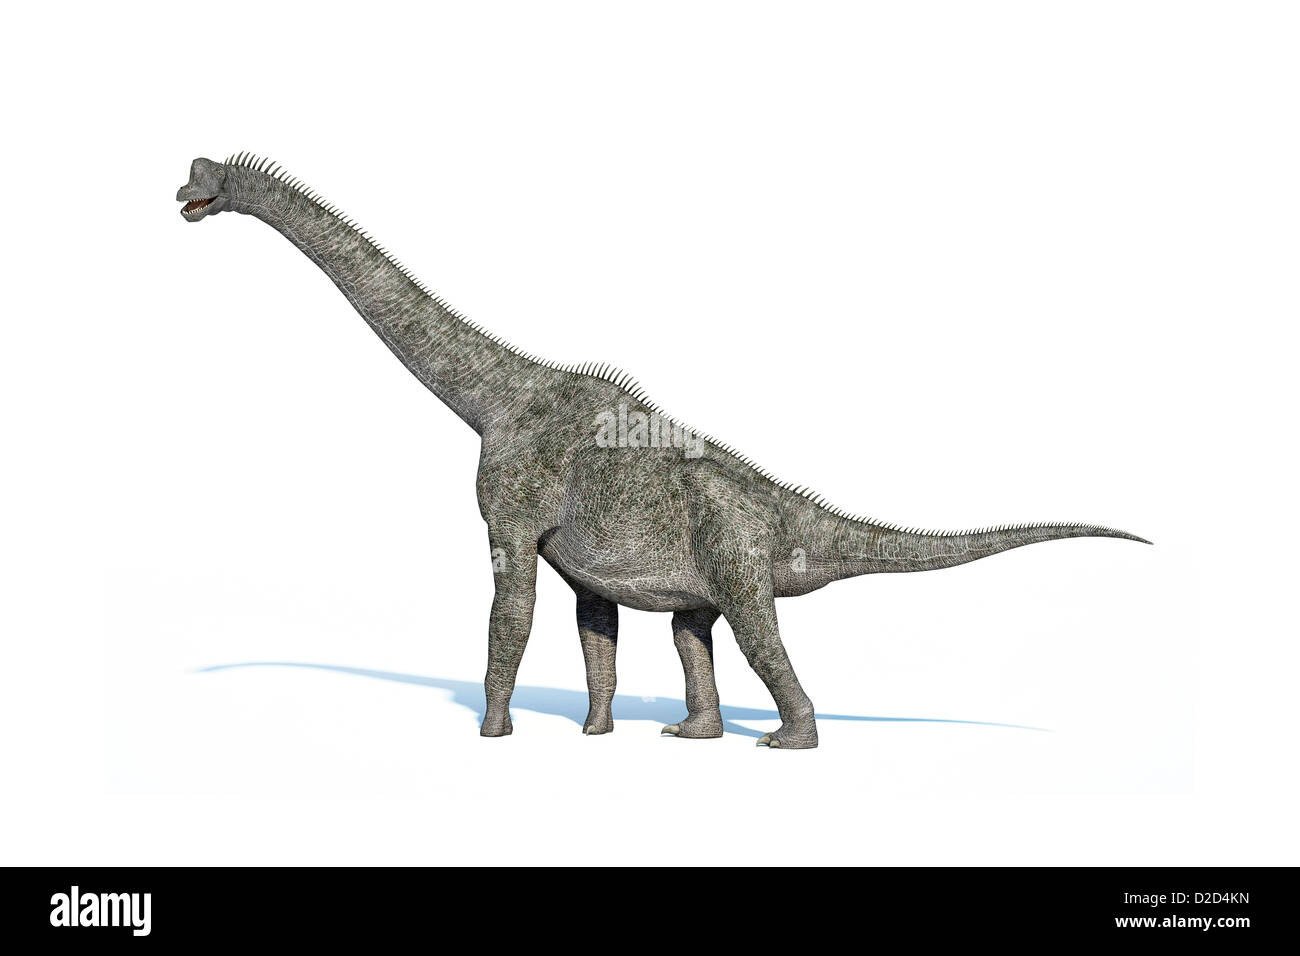 Brachiosaurus dinosauro dinosauro più alte fino a 16 metri di altezza tardo giurassico tra 155 e 145 milioni di anni fa Foto Stock